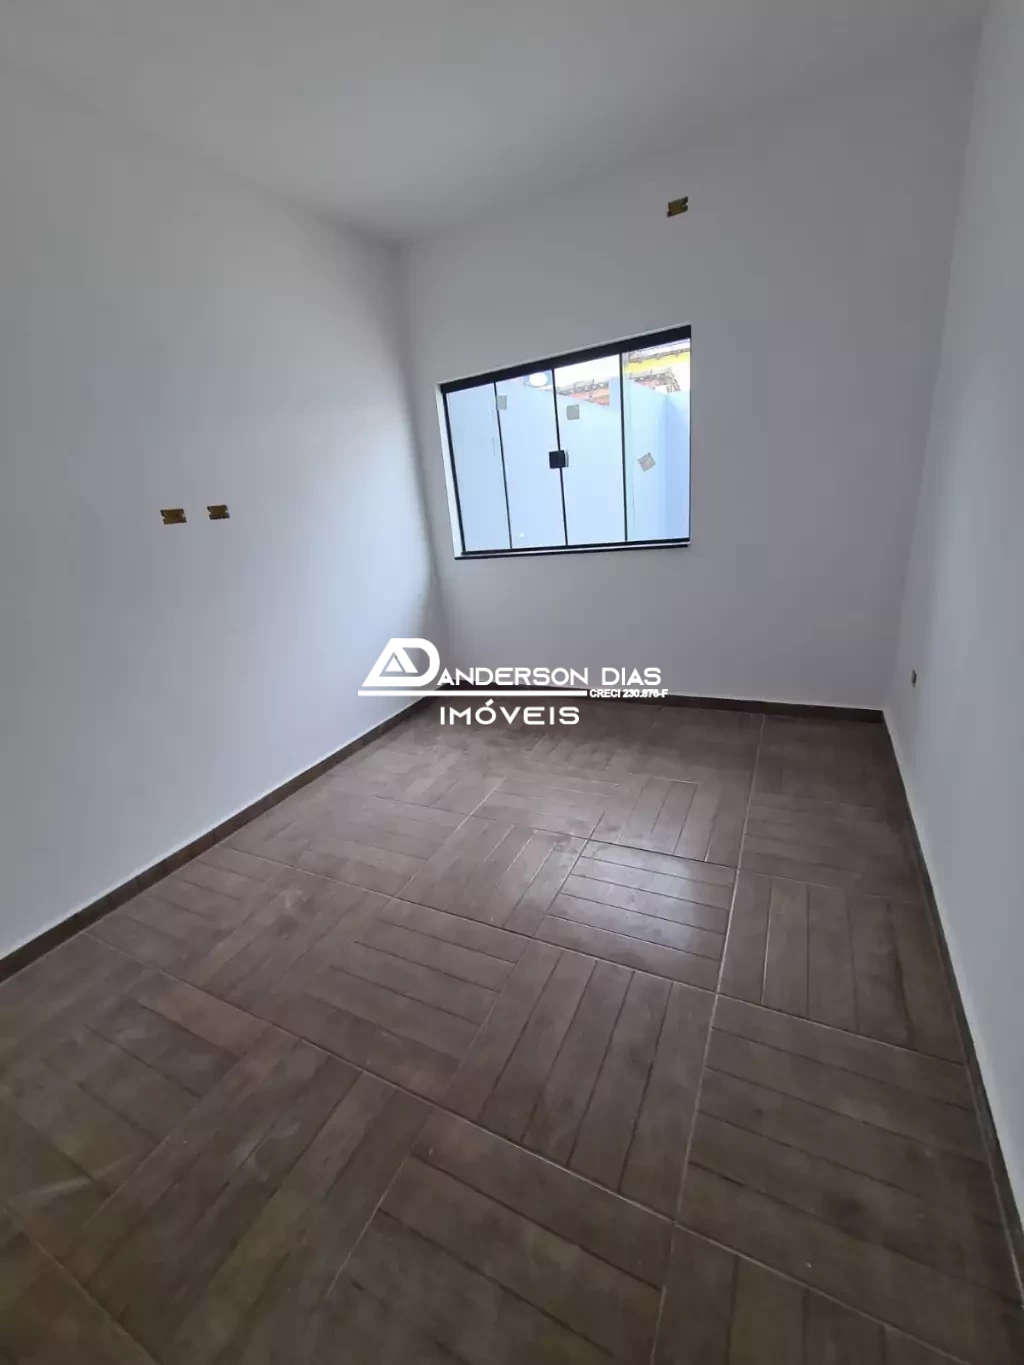 Casa a Venda no Bairro Enseada com 2 Dormitórios, 1 suite, 75m² por  R$ 390 mil- São Sebastião- SP